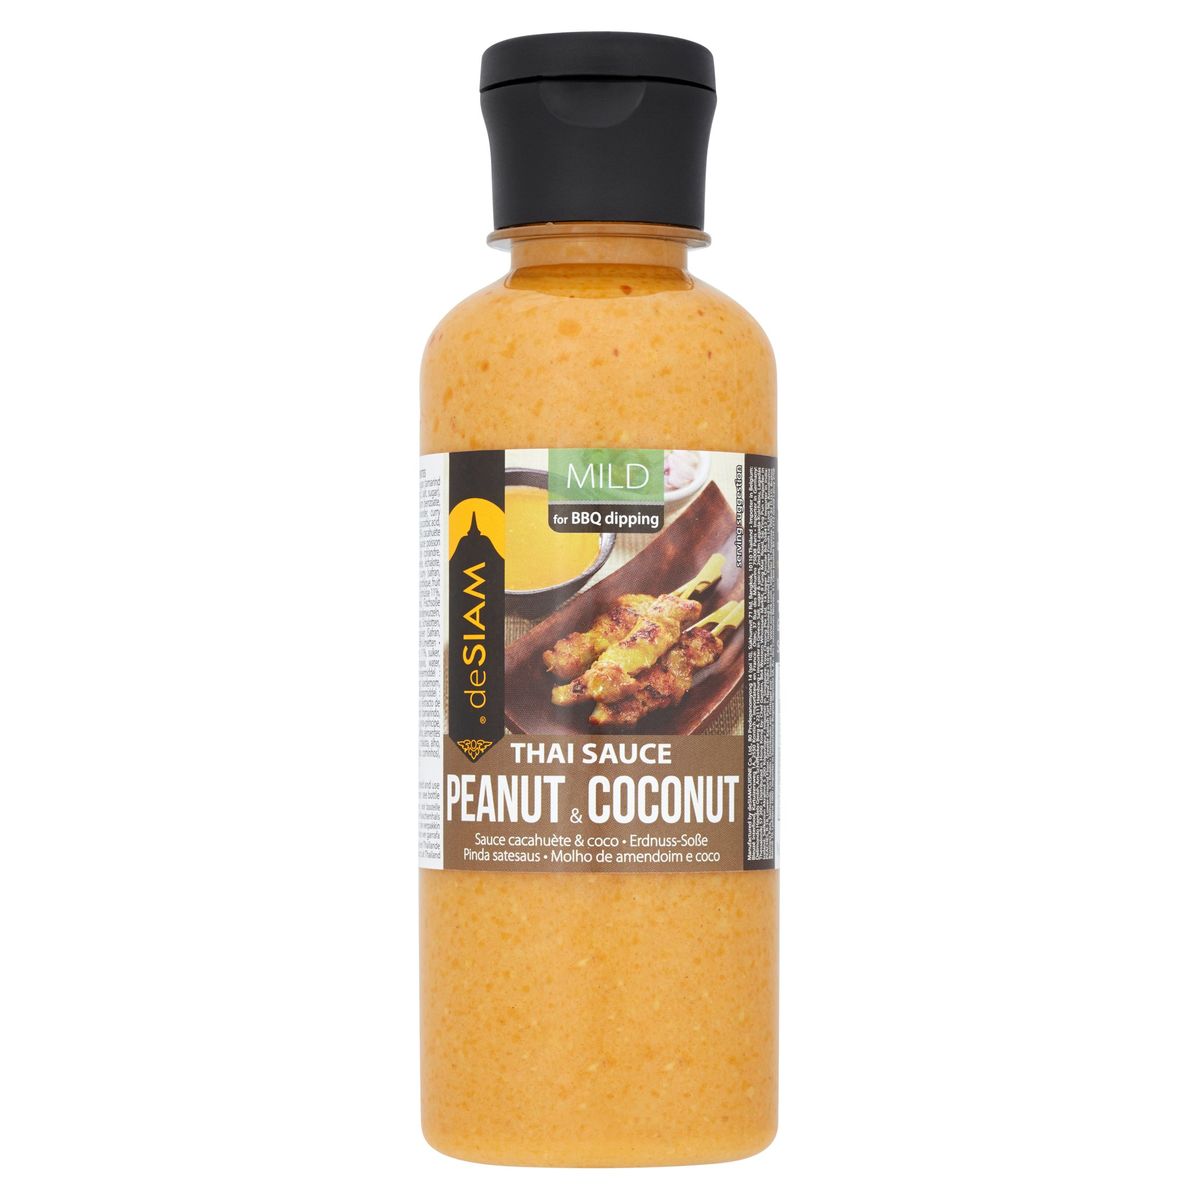 DeSiam Thai Sauce Peanut & Coconut Mild 250 ml